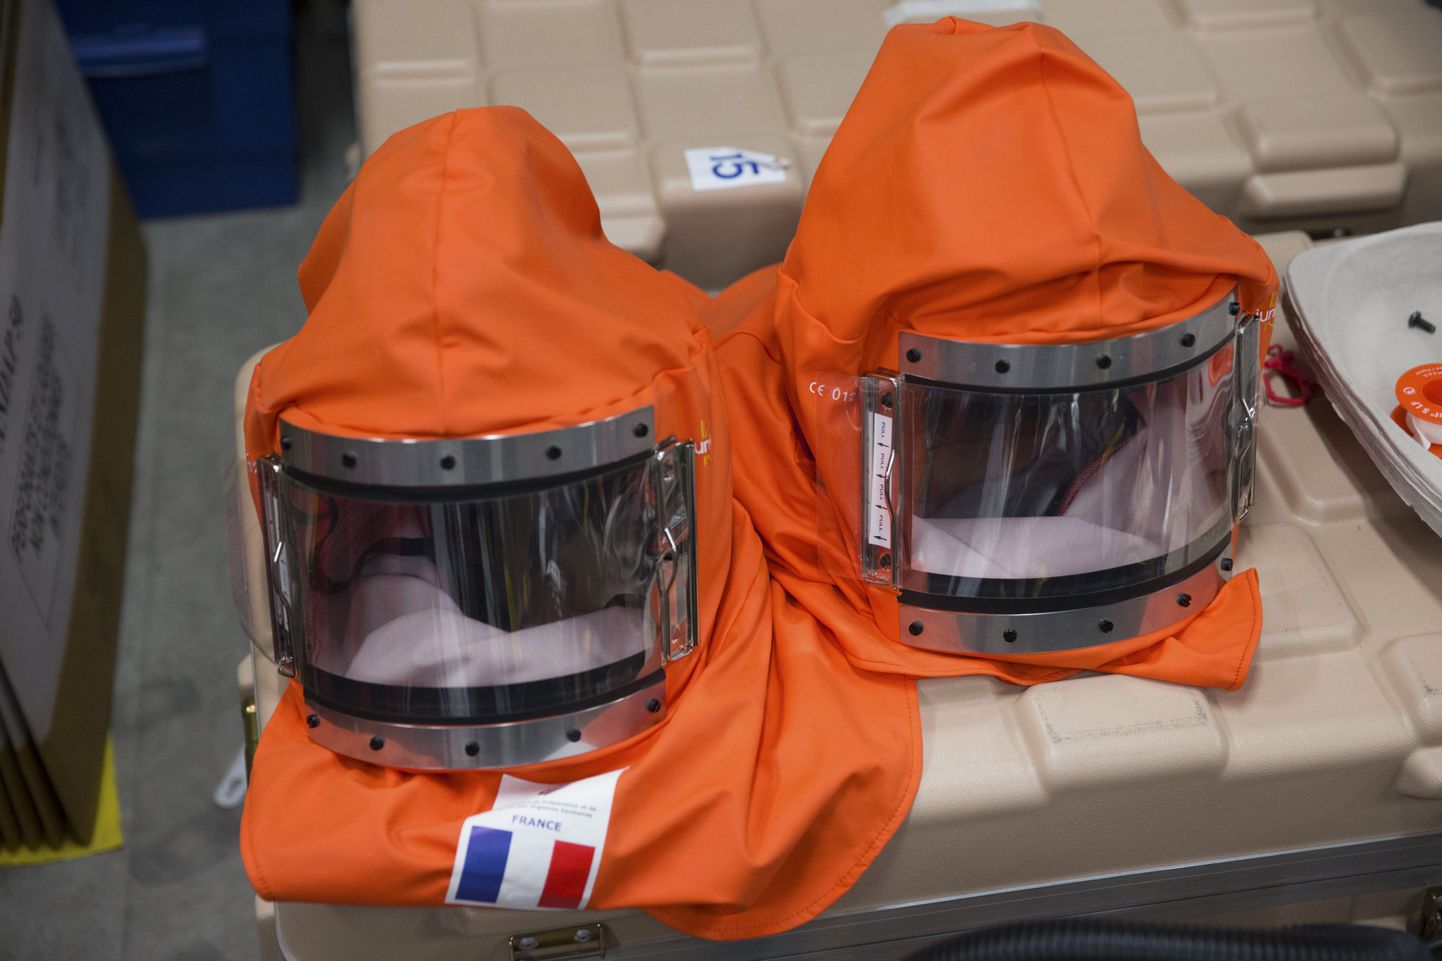 Maskid, mis kuulusid ebolahaigetega kokku puutunud Prantsuse vabatahtlike varustusse.